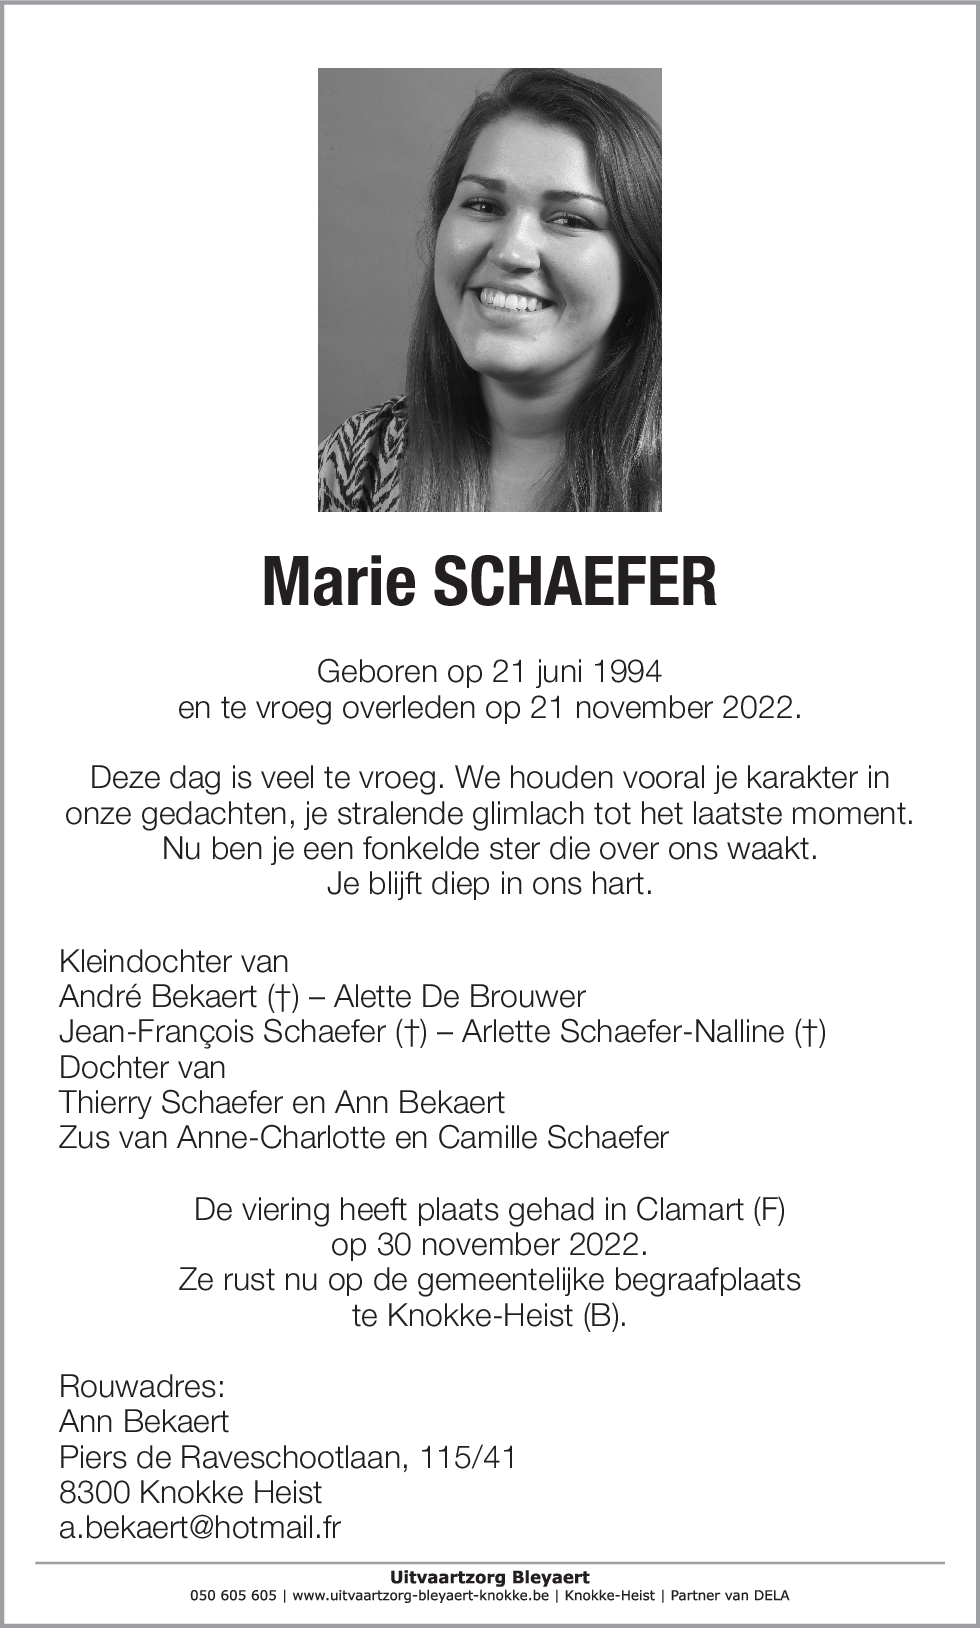 Marie Schaefer